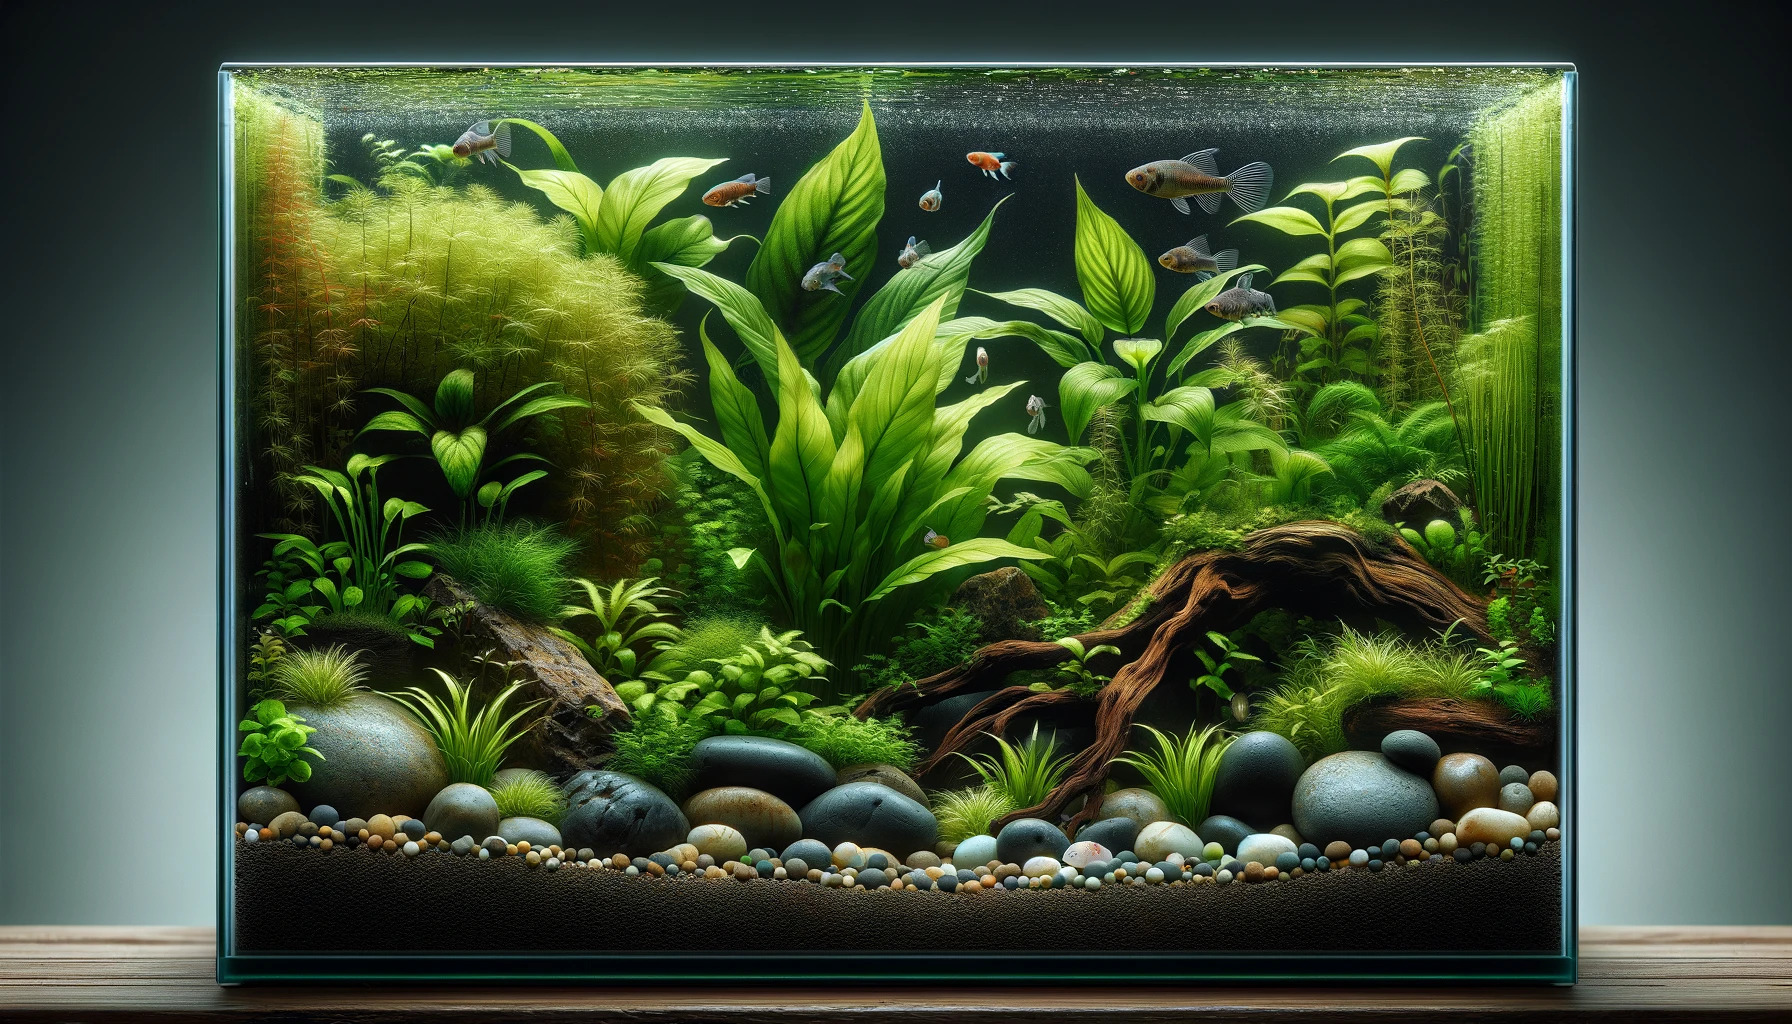 Ausschnitt eines Aquariums mit vielen Pflanzen, einigen Steinen und Wurzeln, künstlerisch